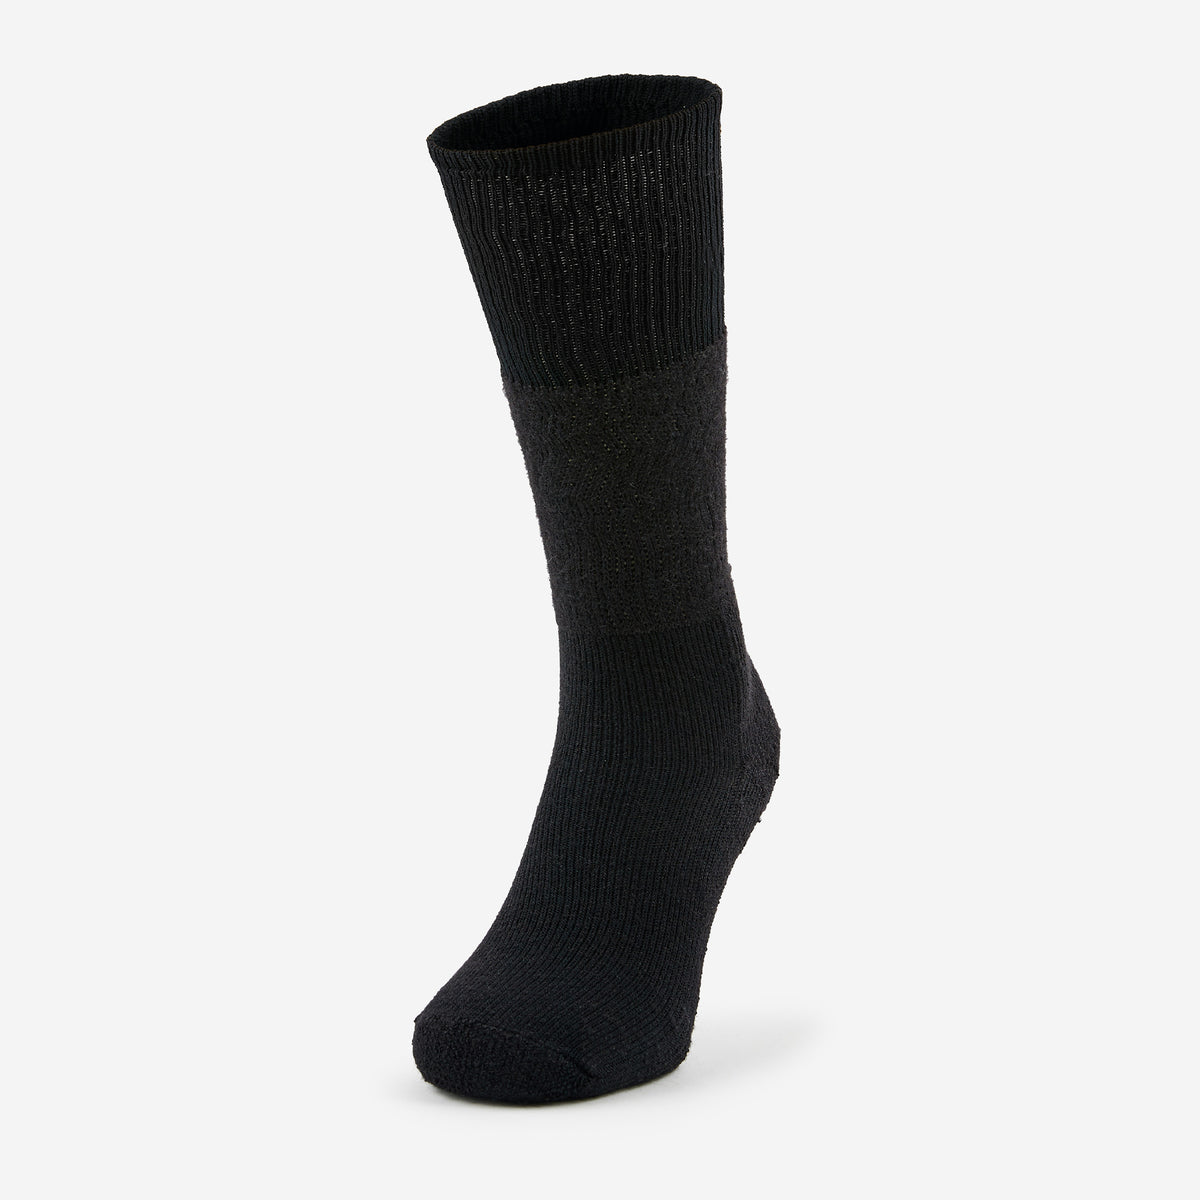 Uniform Socks - Unisex